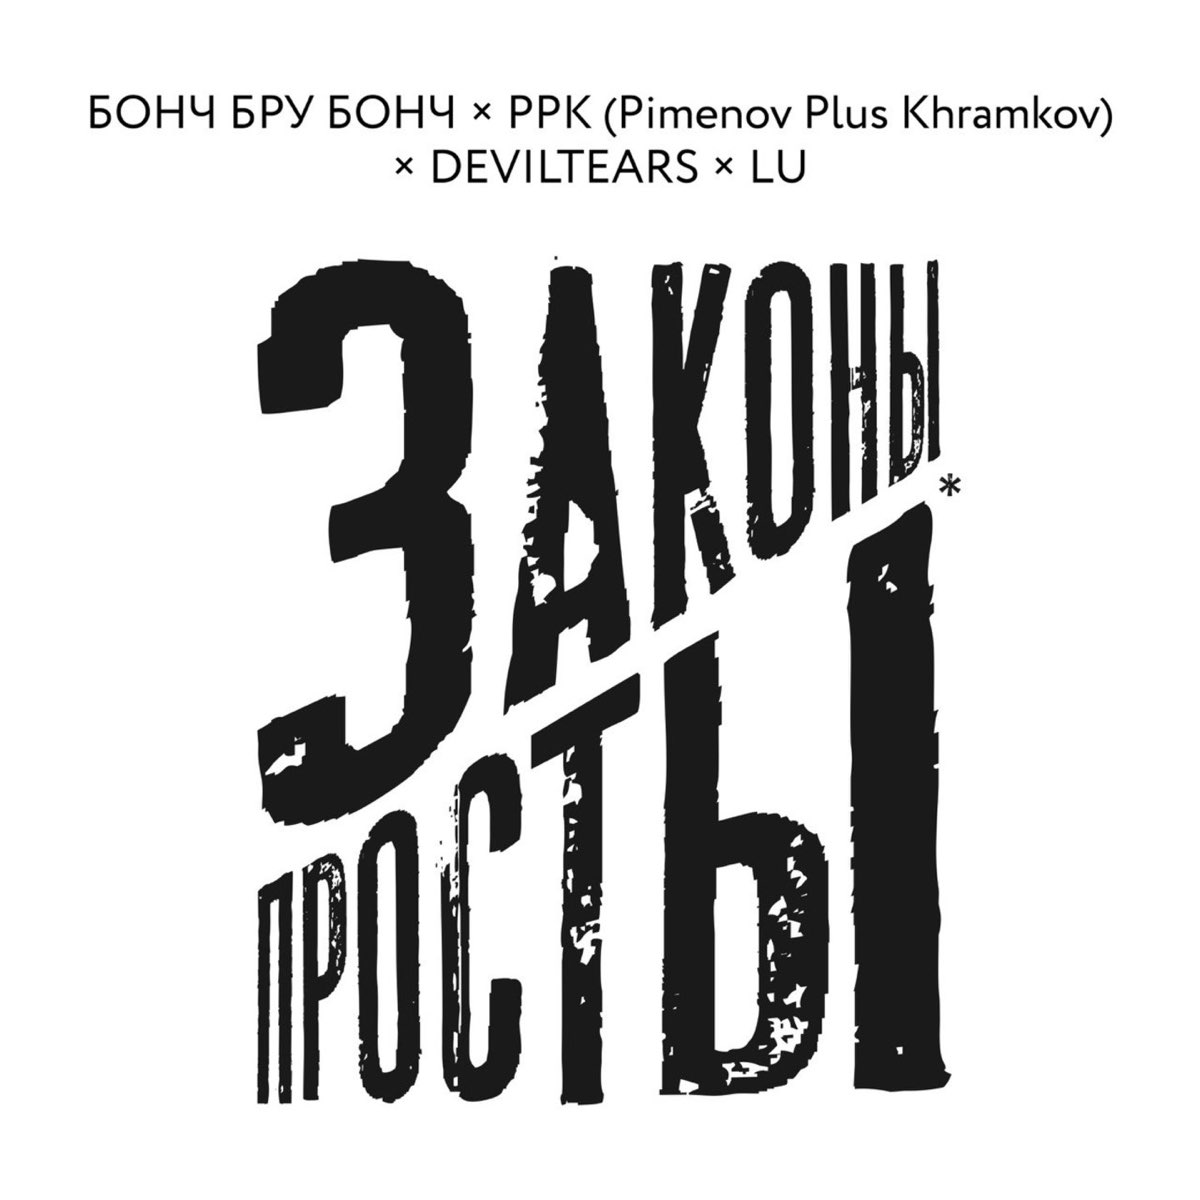 ЗАКОНЫ ПРОСТЫ - Single by Бонч Бру Бонч, PPK (Pimenov Plus Khramkov) & ...